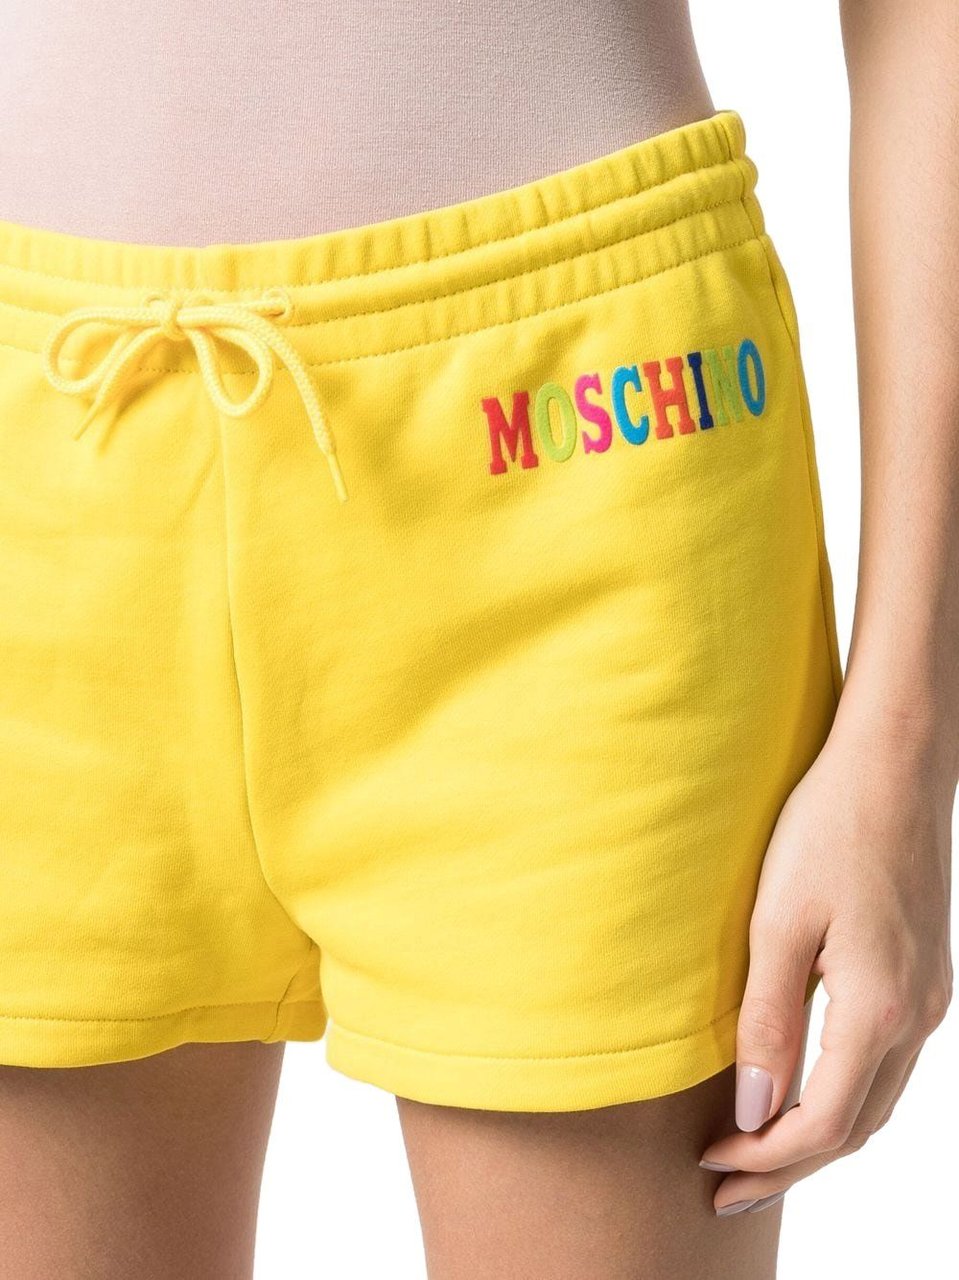 Moschino Shorts Yellow Yellow Geel